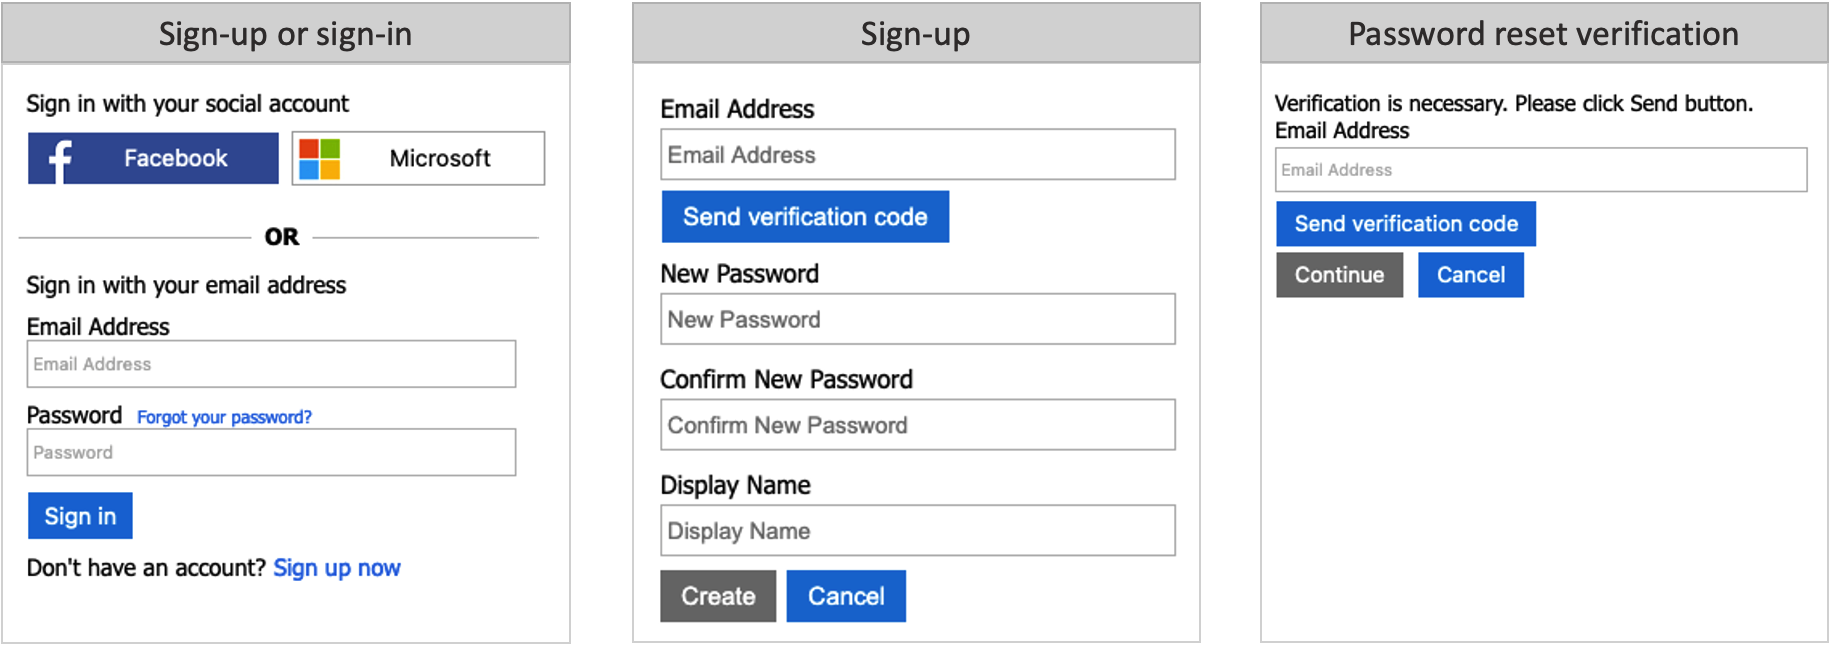 メール アドレスによるサインアップまたはサインイン エクスペリエンスを示す一連のスクリーンショット。